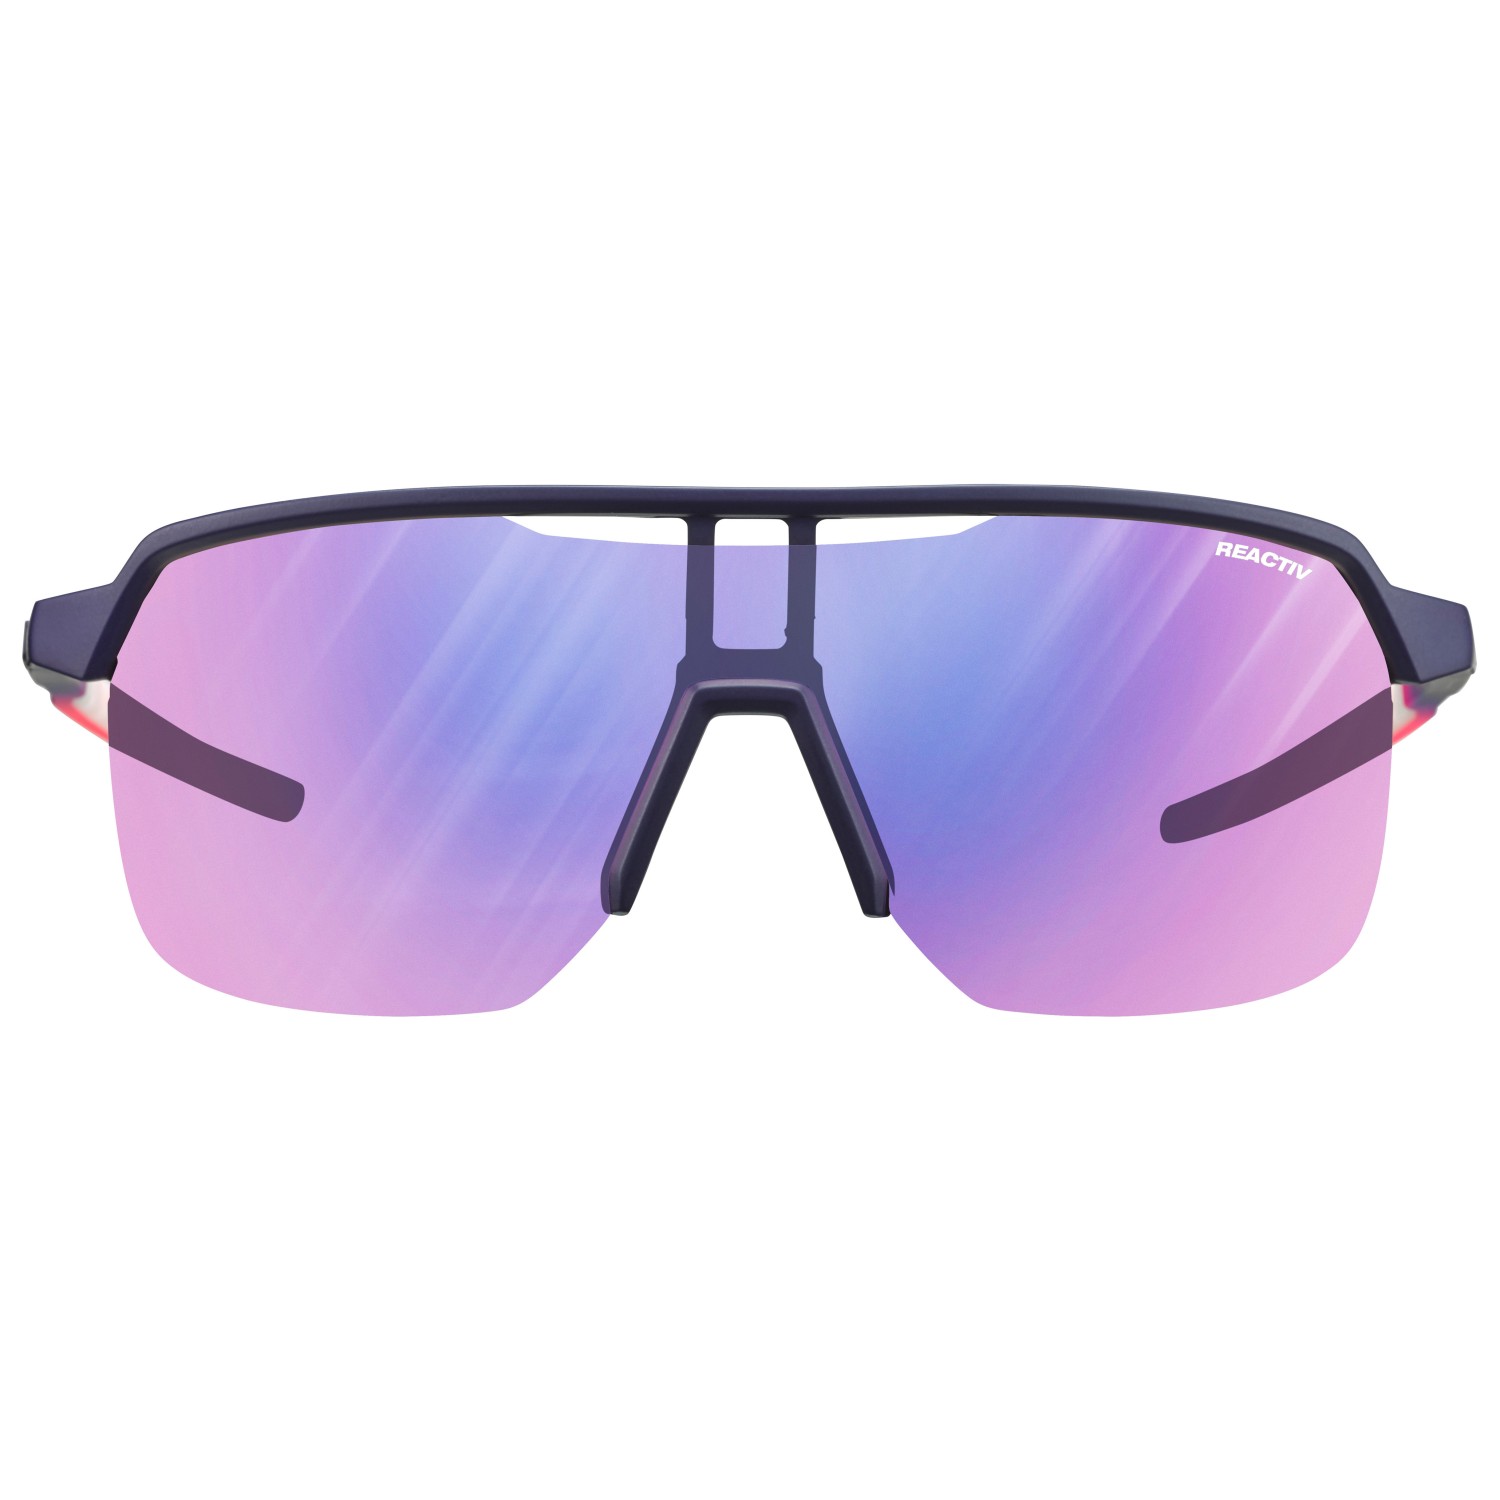 Велосипедные очки Julbo Frequency Reactiv S1 3 High Contrast (VLT 13 72%), цвет Violett/Rose